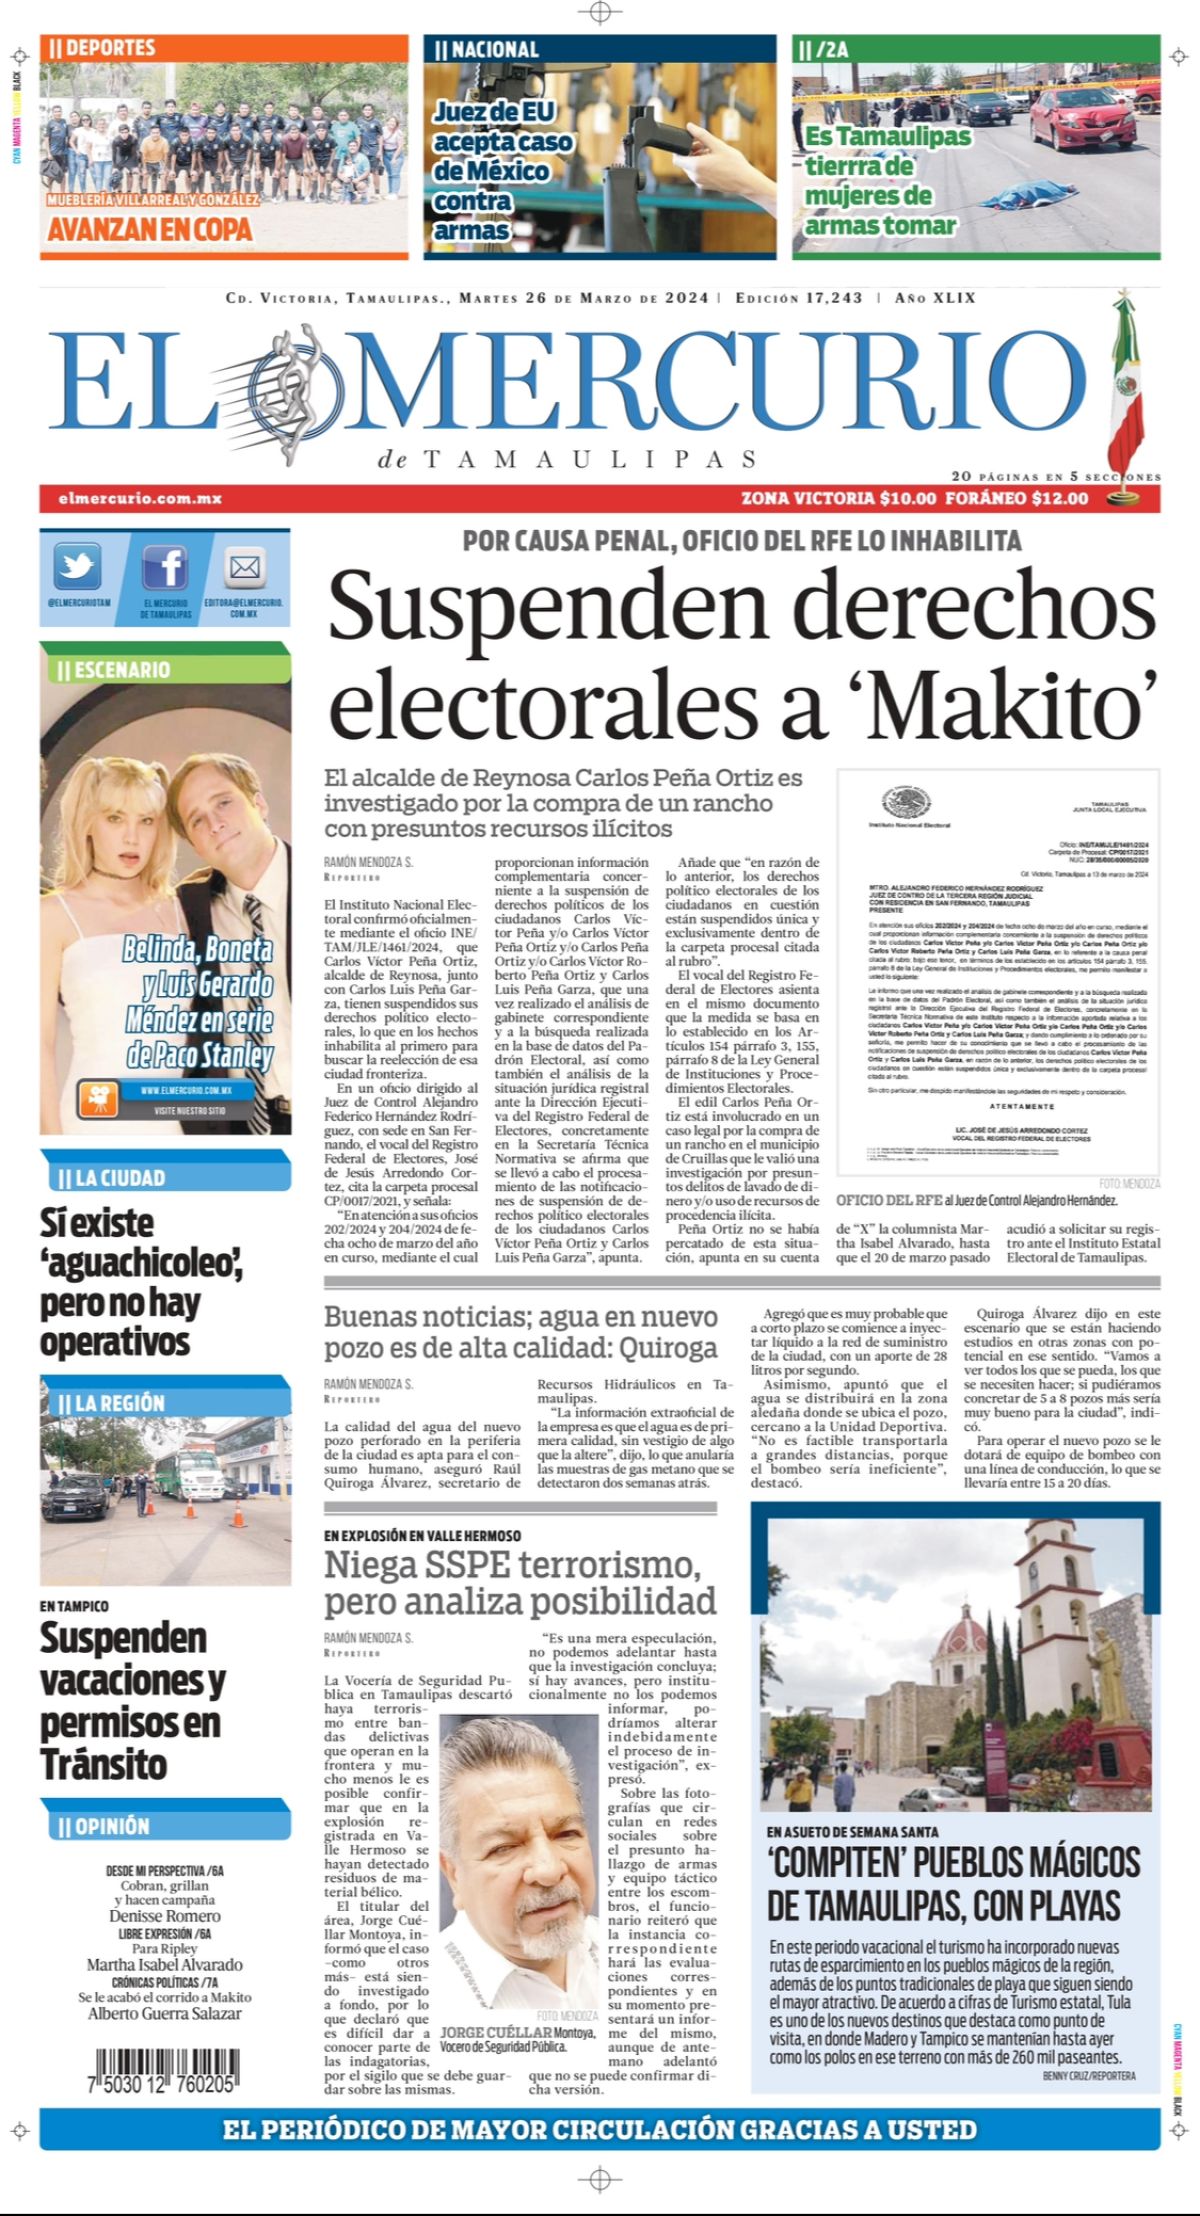 Suspenden derechos electorales a ‘Makito’